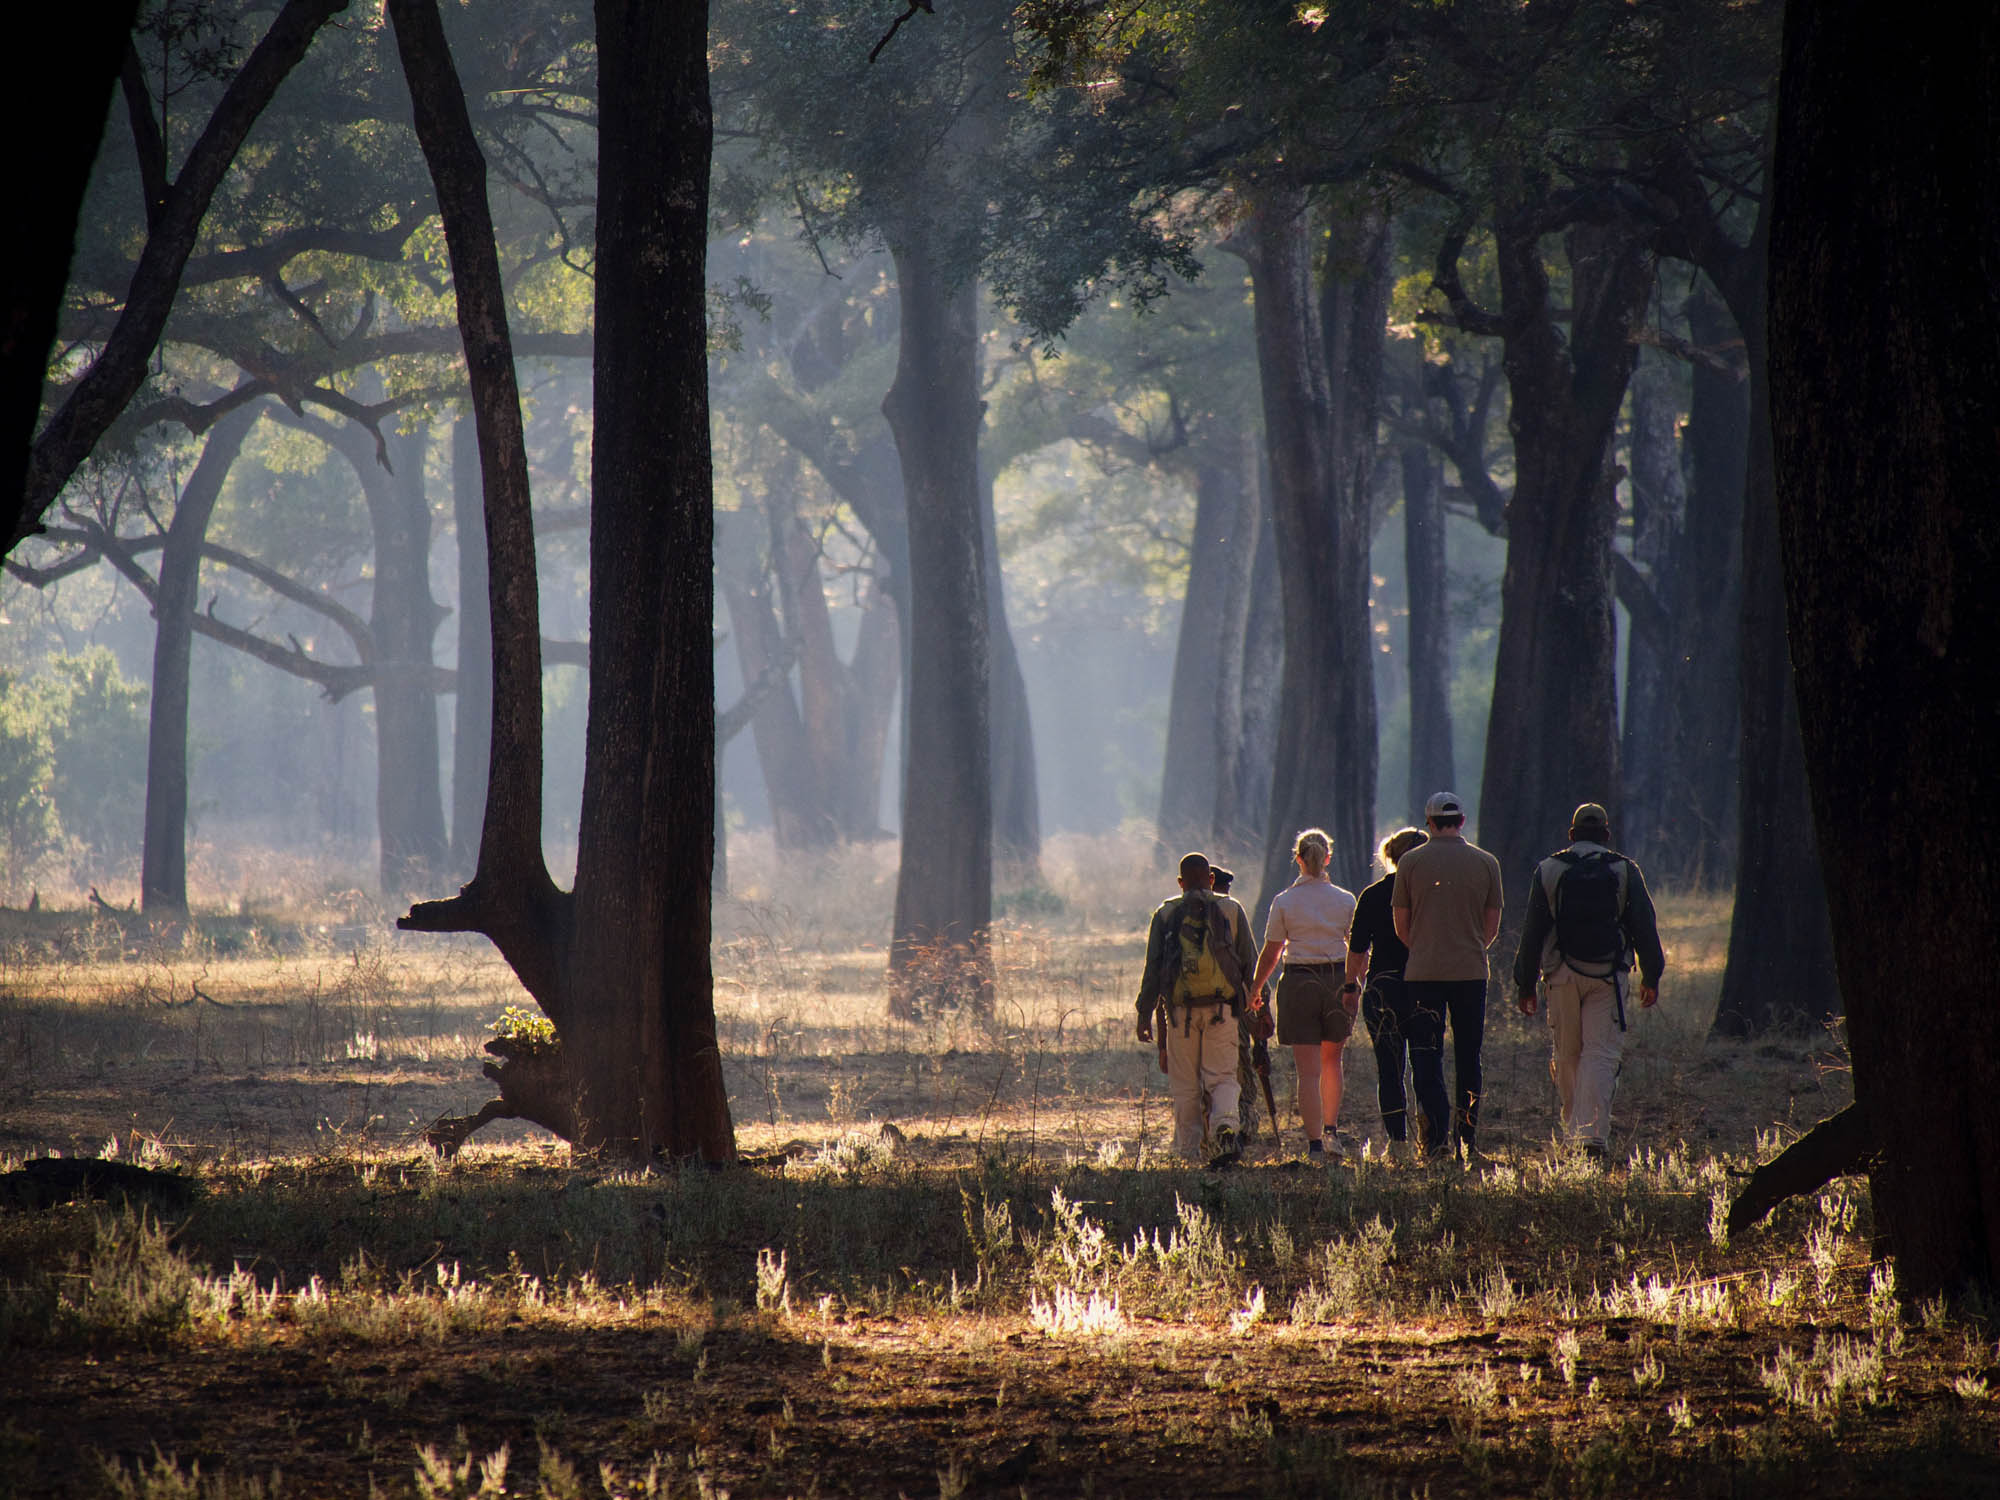 A walking safari in the South Luangwa, Zambia